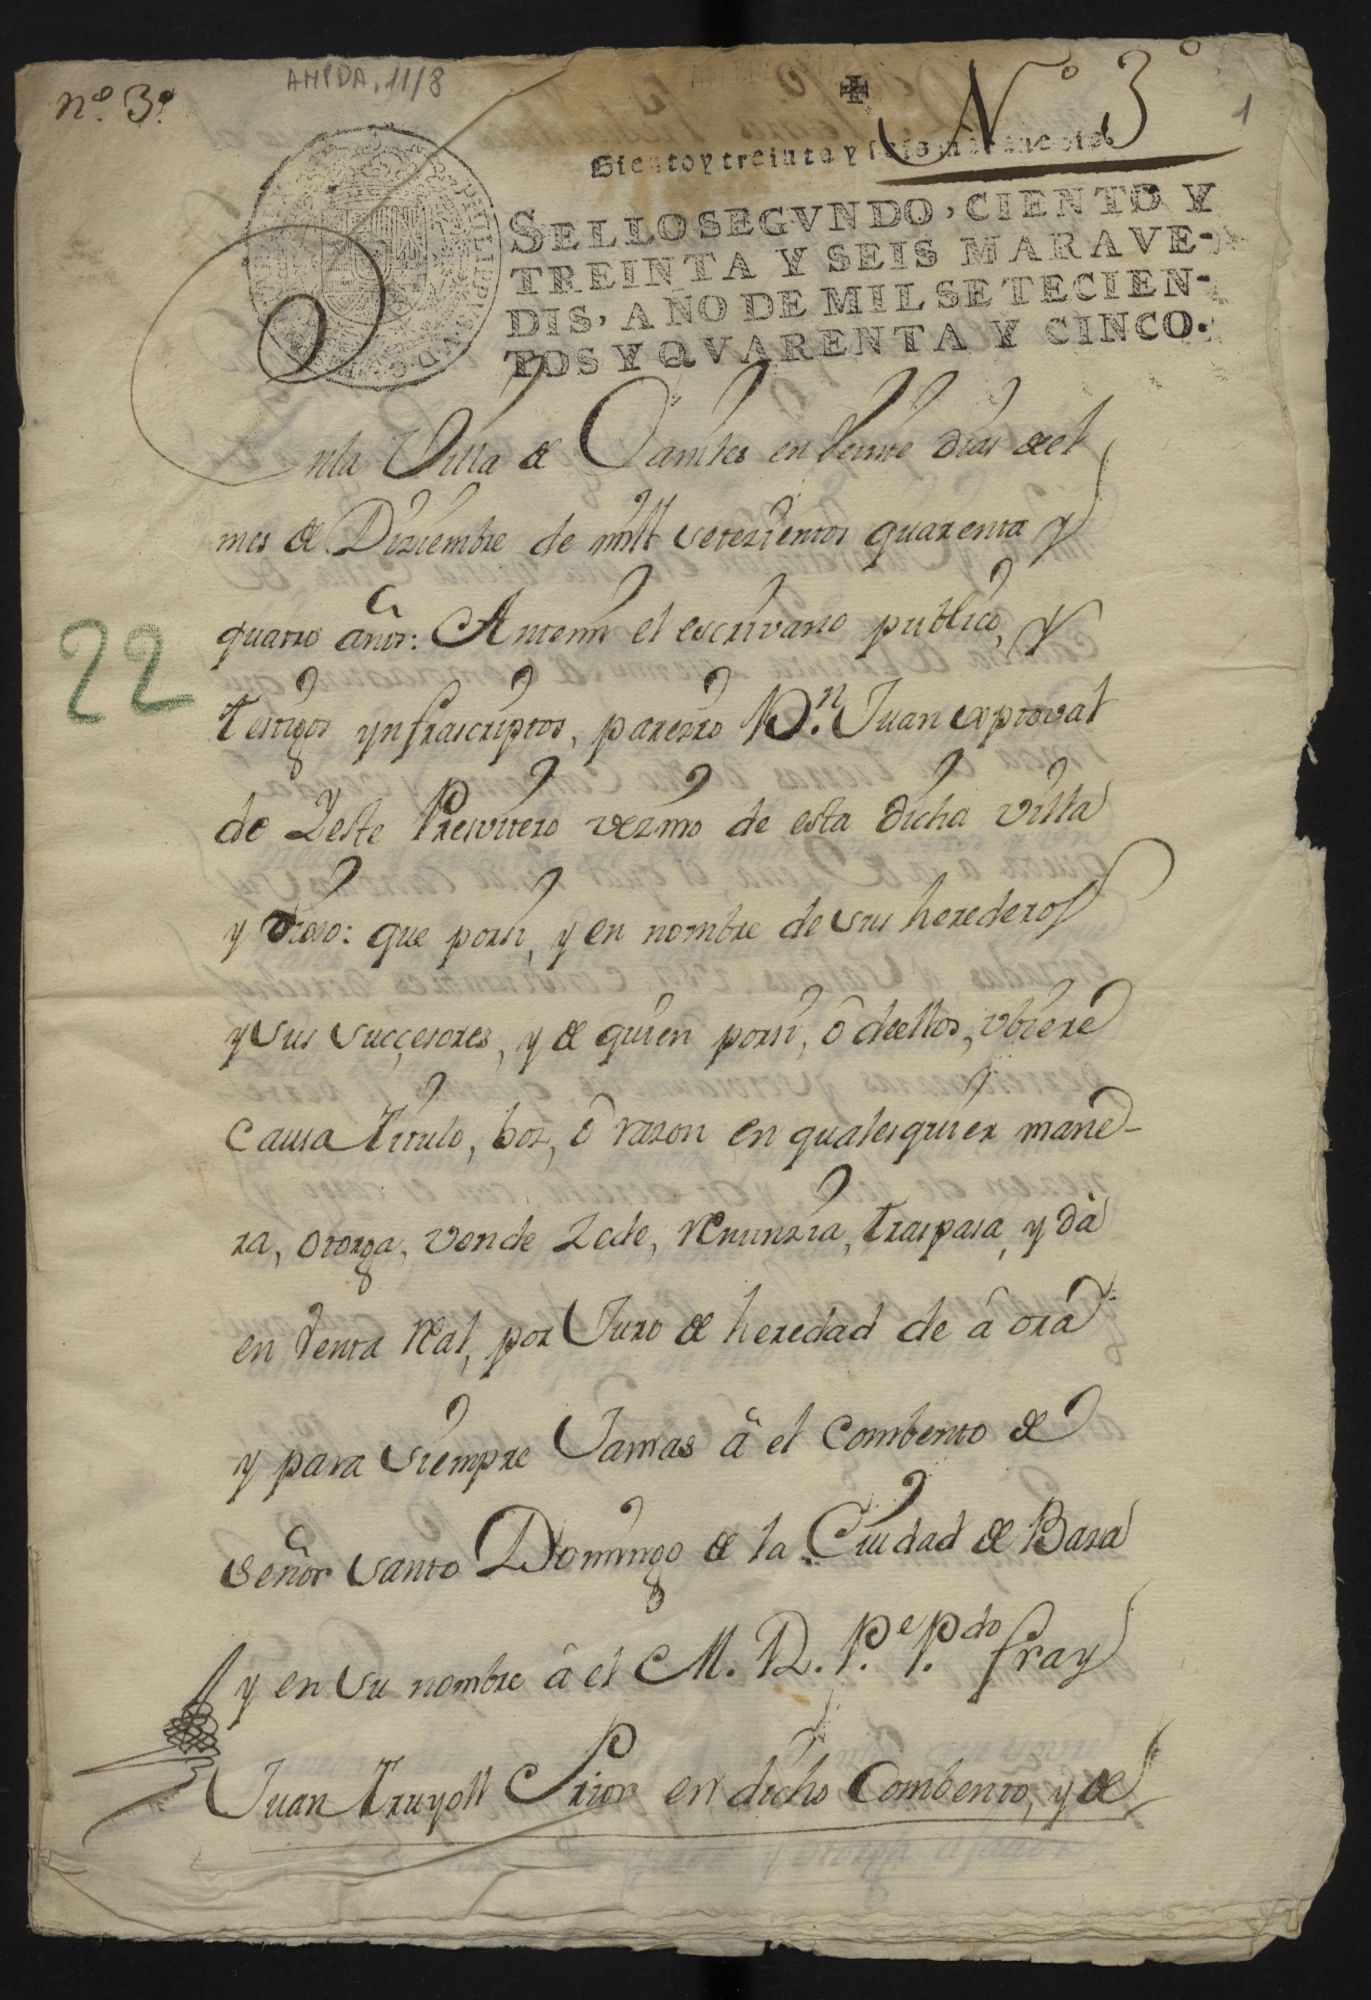 Traslado auténtico de la escritura de venta  de Juan Cristóbal de Yeste, presbítero y vecino de Baza, a favor del Convento de Santa Bárbara de un bancal en el pago de Guaguix.